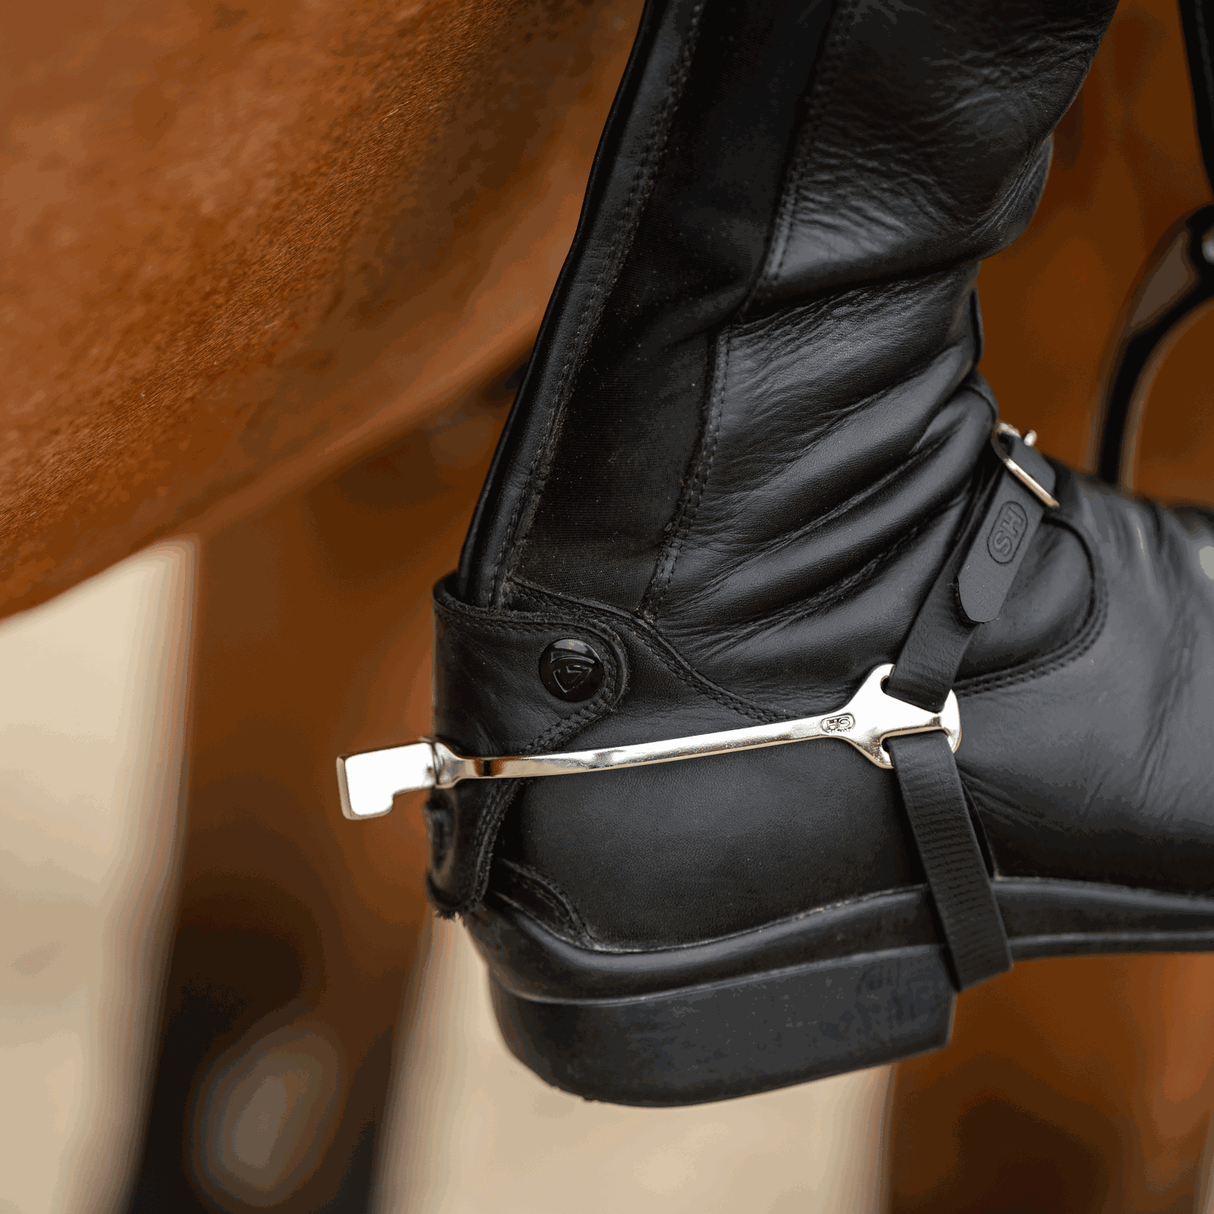 Sprenger Slimline Stainless Steel Flat Neck Boot Protect Spurs #style_hammer-neck